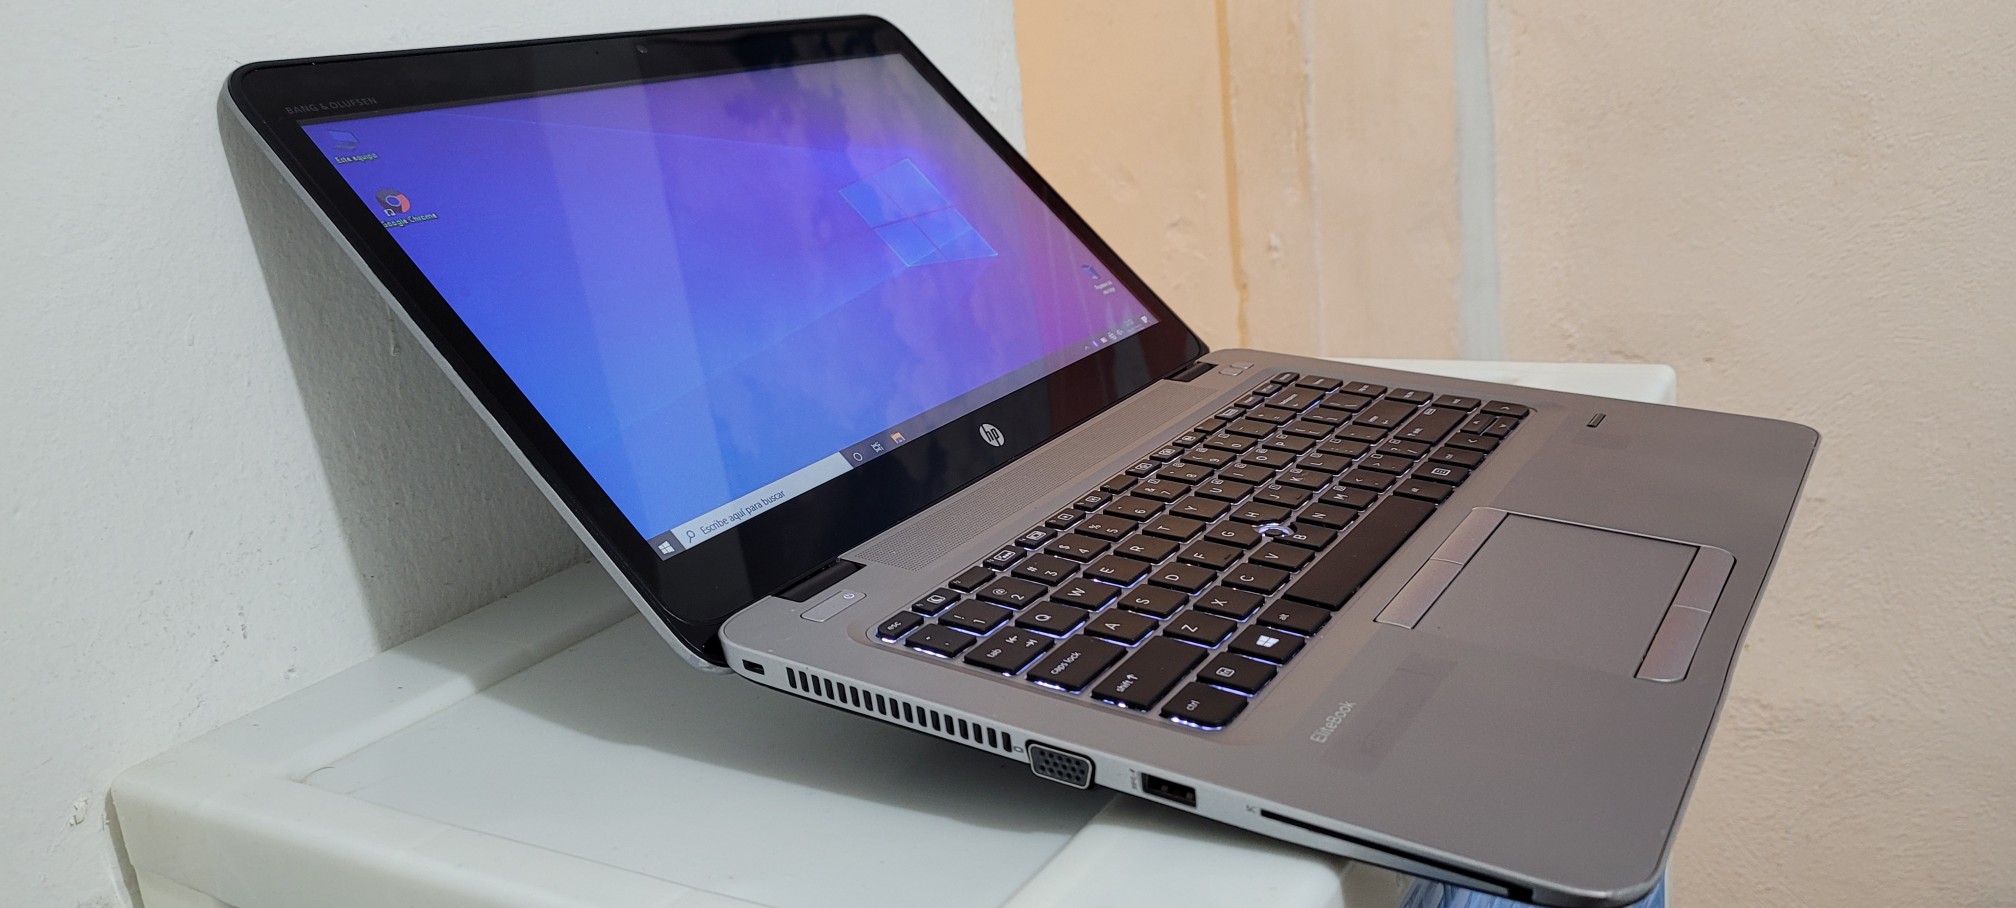 computadoras y laptops - Hp Touch g3 14 Pulg Core i5 7ma Gen Ram 8gb ddr4 Disco 500gb Full 1080p 1